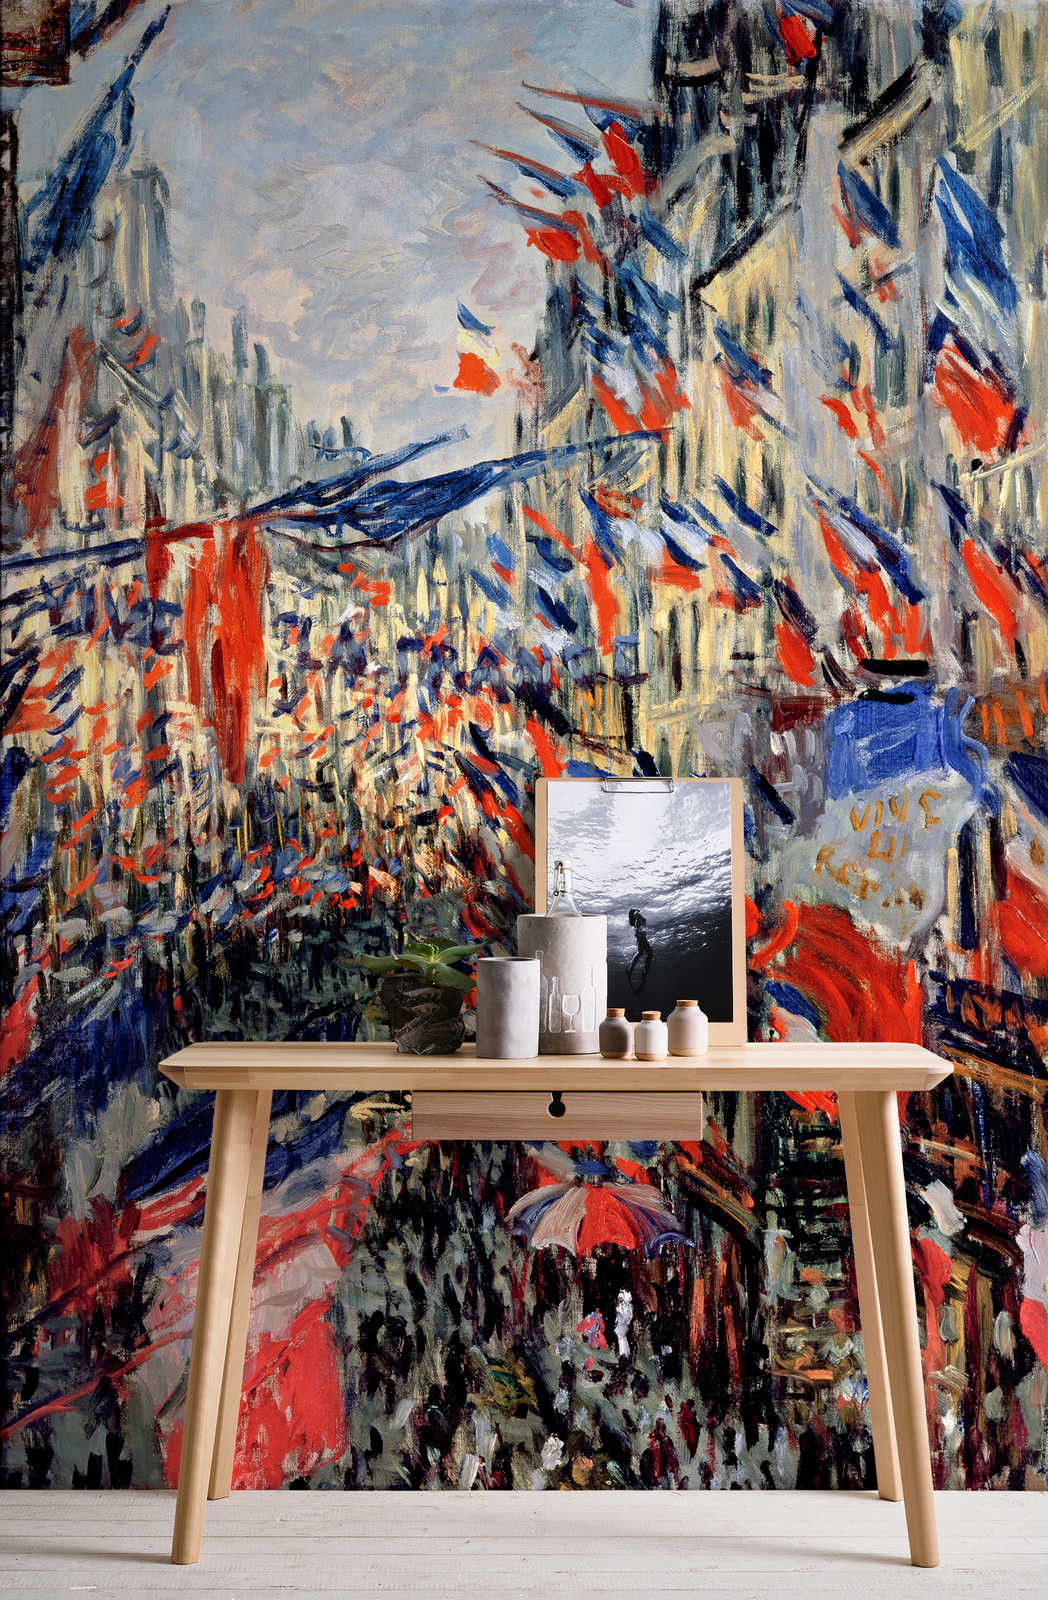             Muurschildering "De Rue Saint-Denis, 30 juni vieringen" door Claude Monet
        